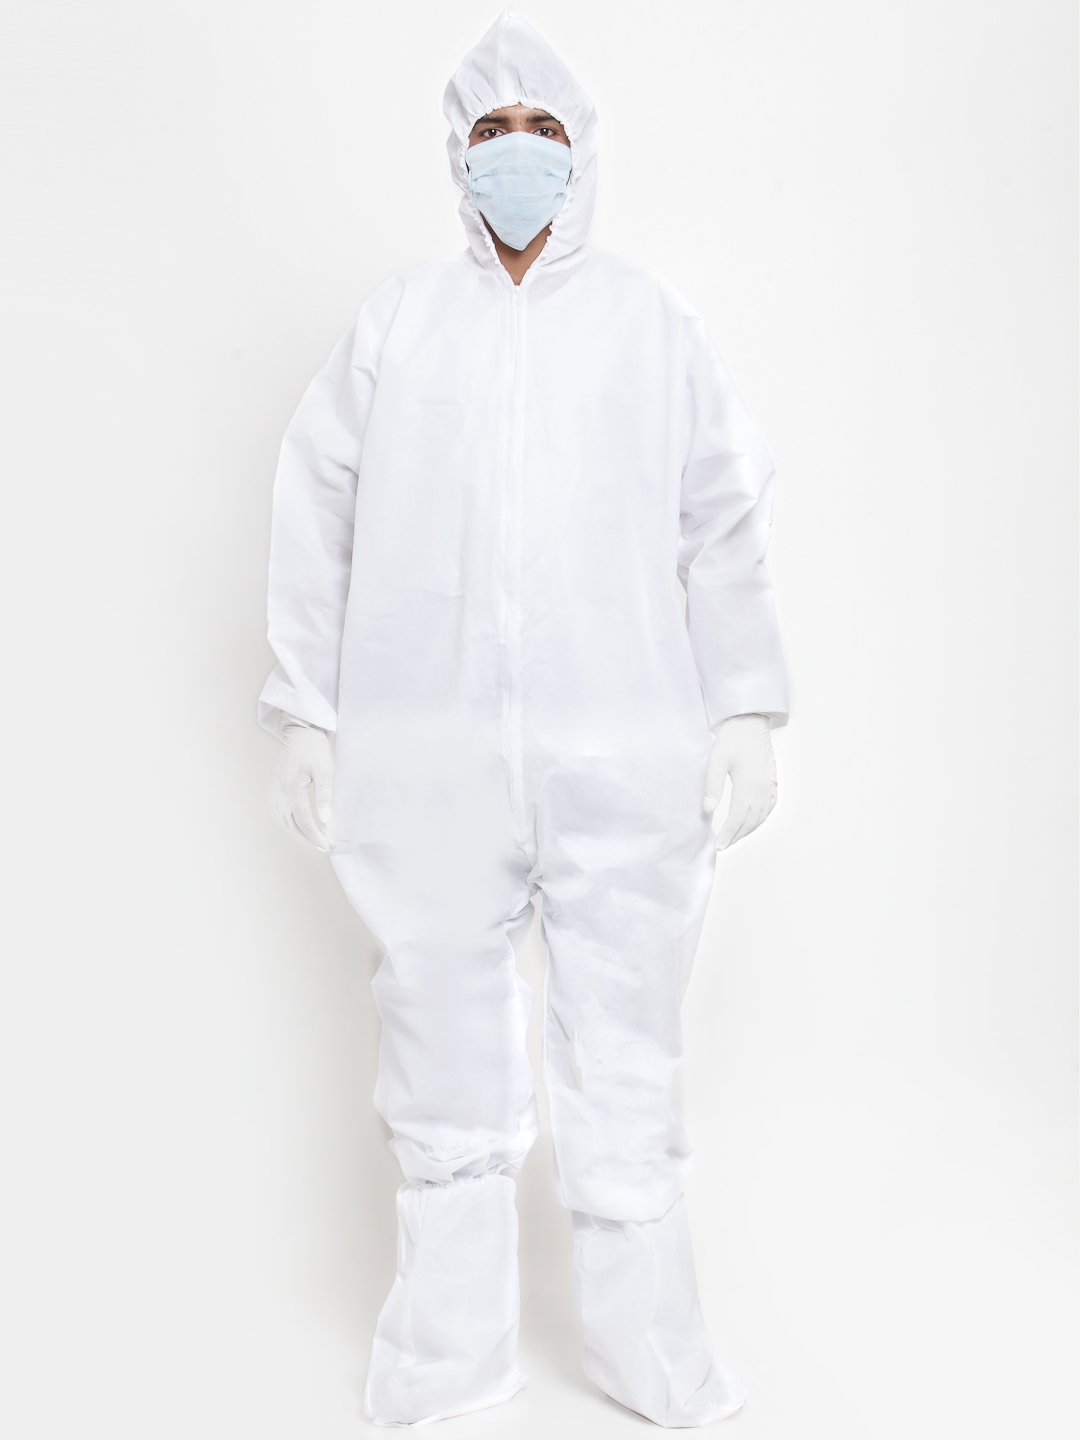 Buy Teakwood Leathers Unisex White Protective Bodysuit With Mask ...